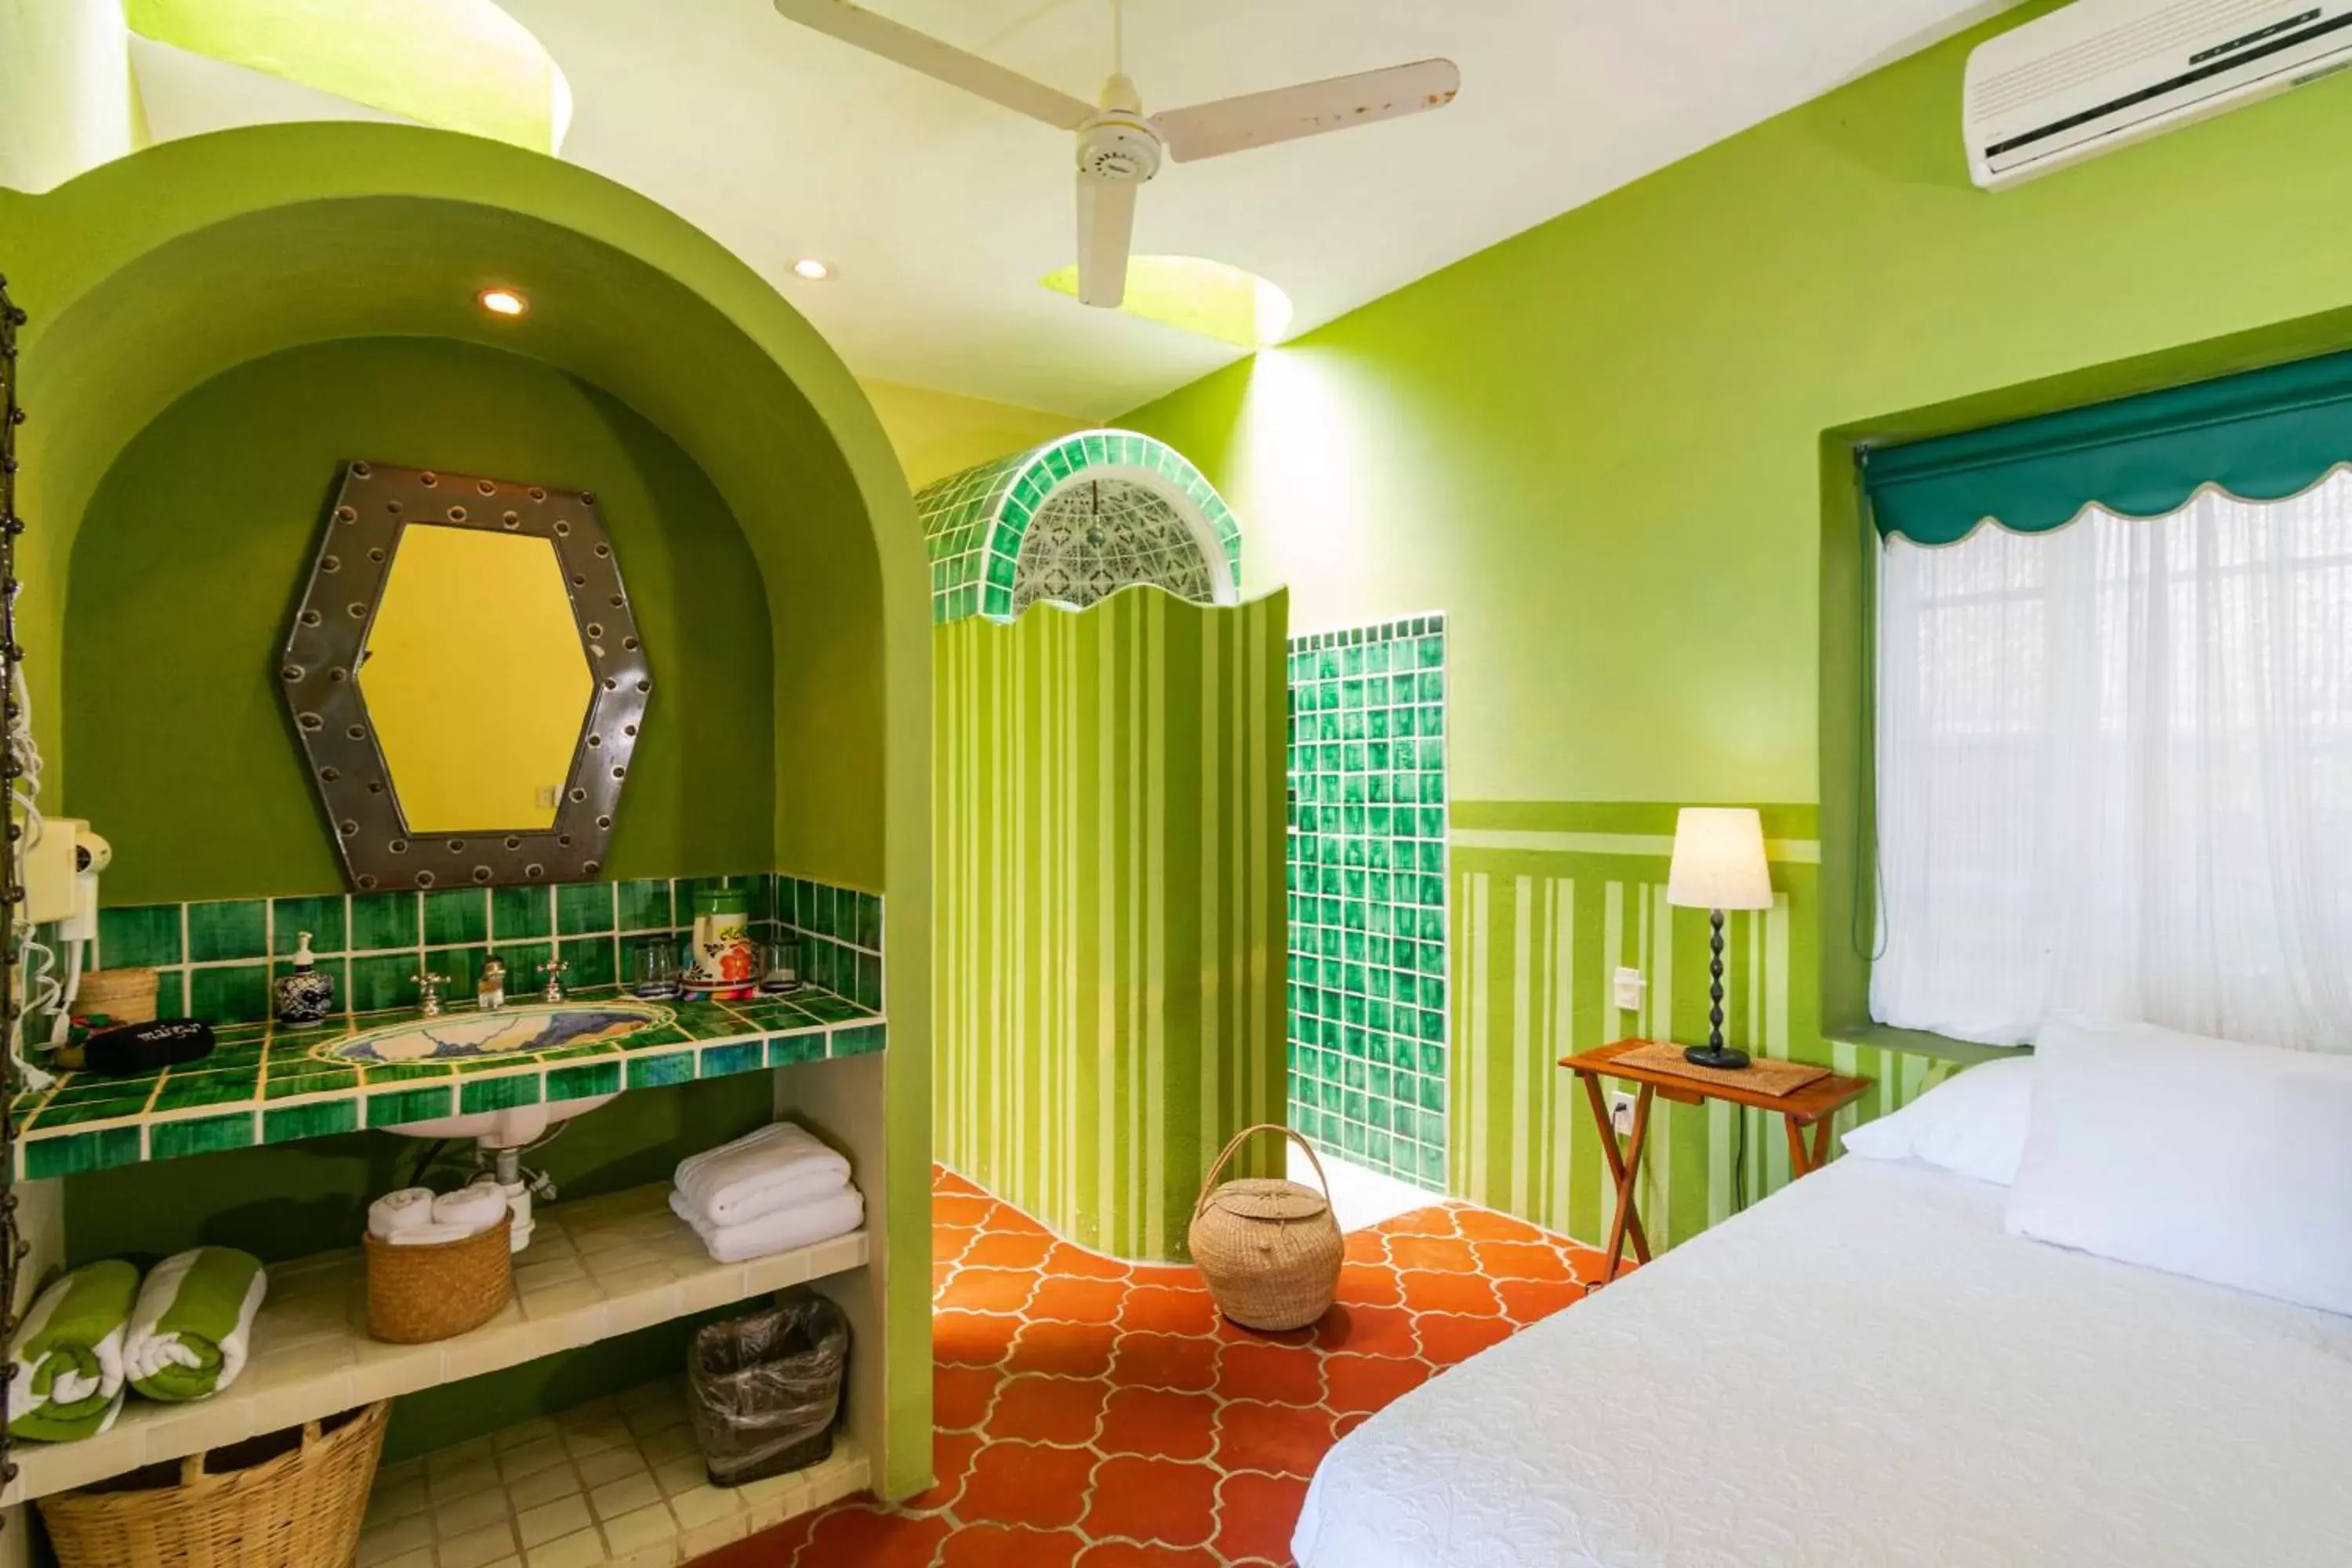 Bedroom, Bathroom in Villas Jardin Del Mar